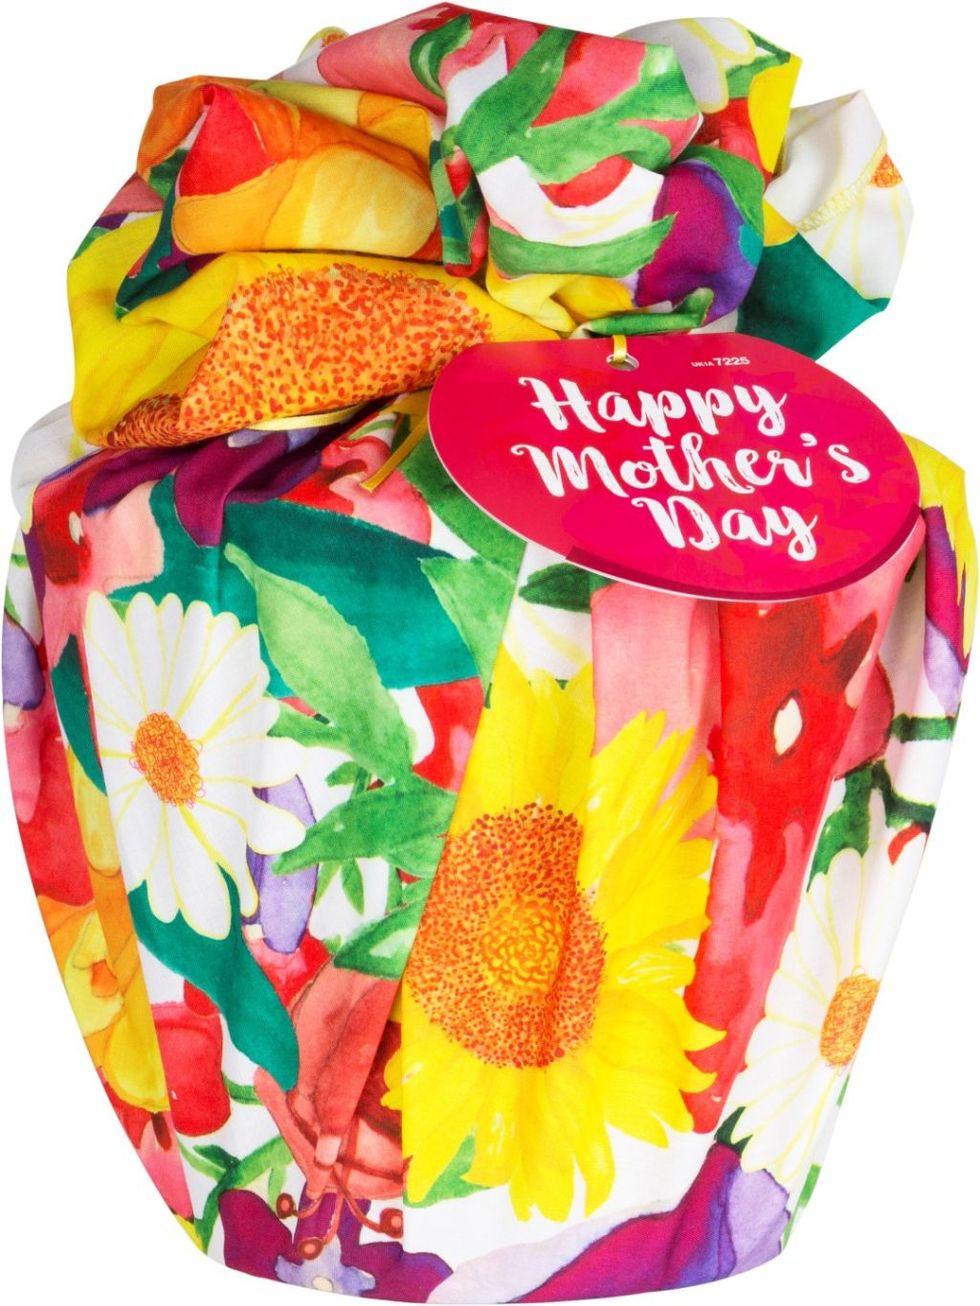 Festa della mamma: i regali per farla felice da prendere online - Amica